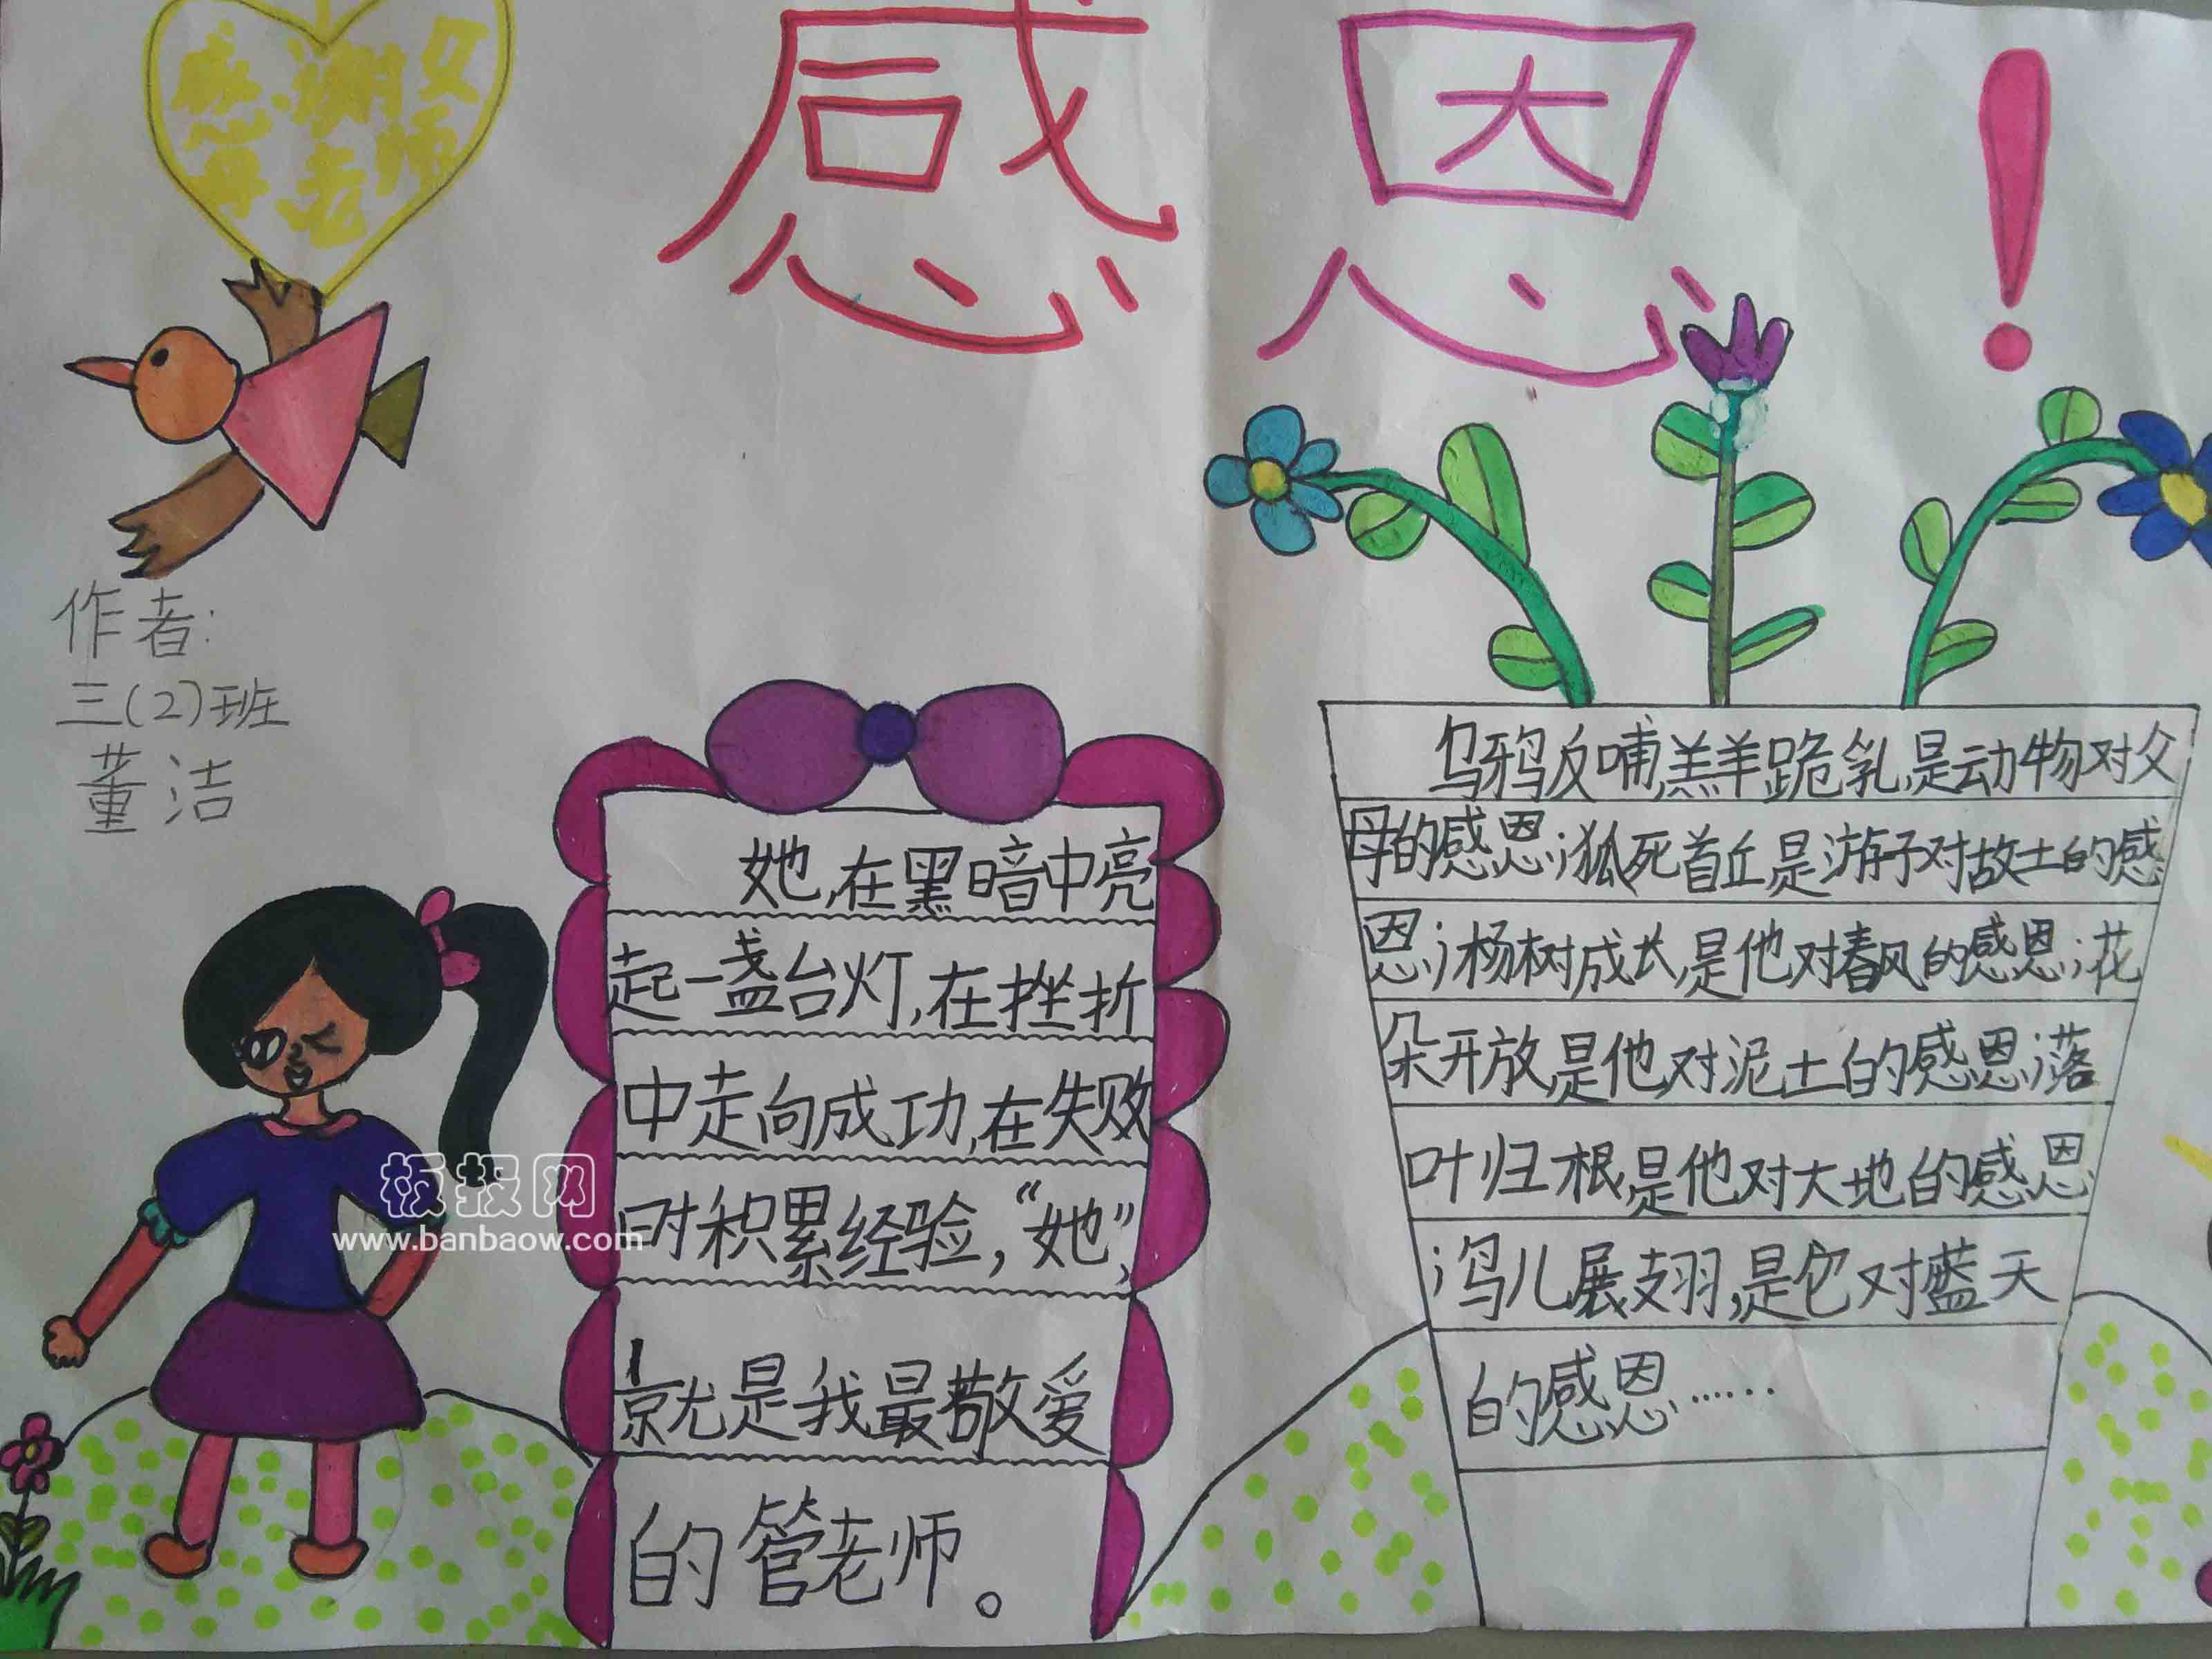 高中漂亮的中国风感恩节手抄报图片大全- 老师板报网